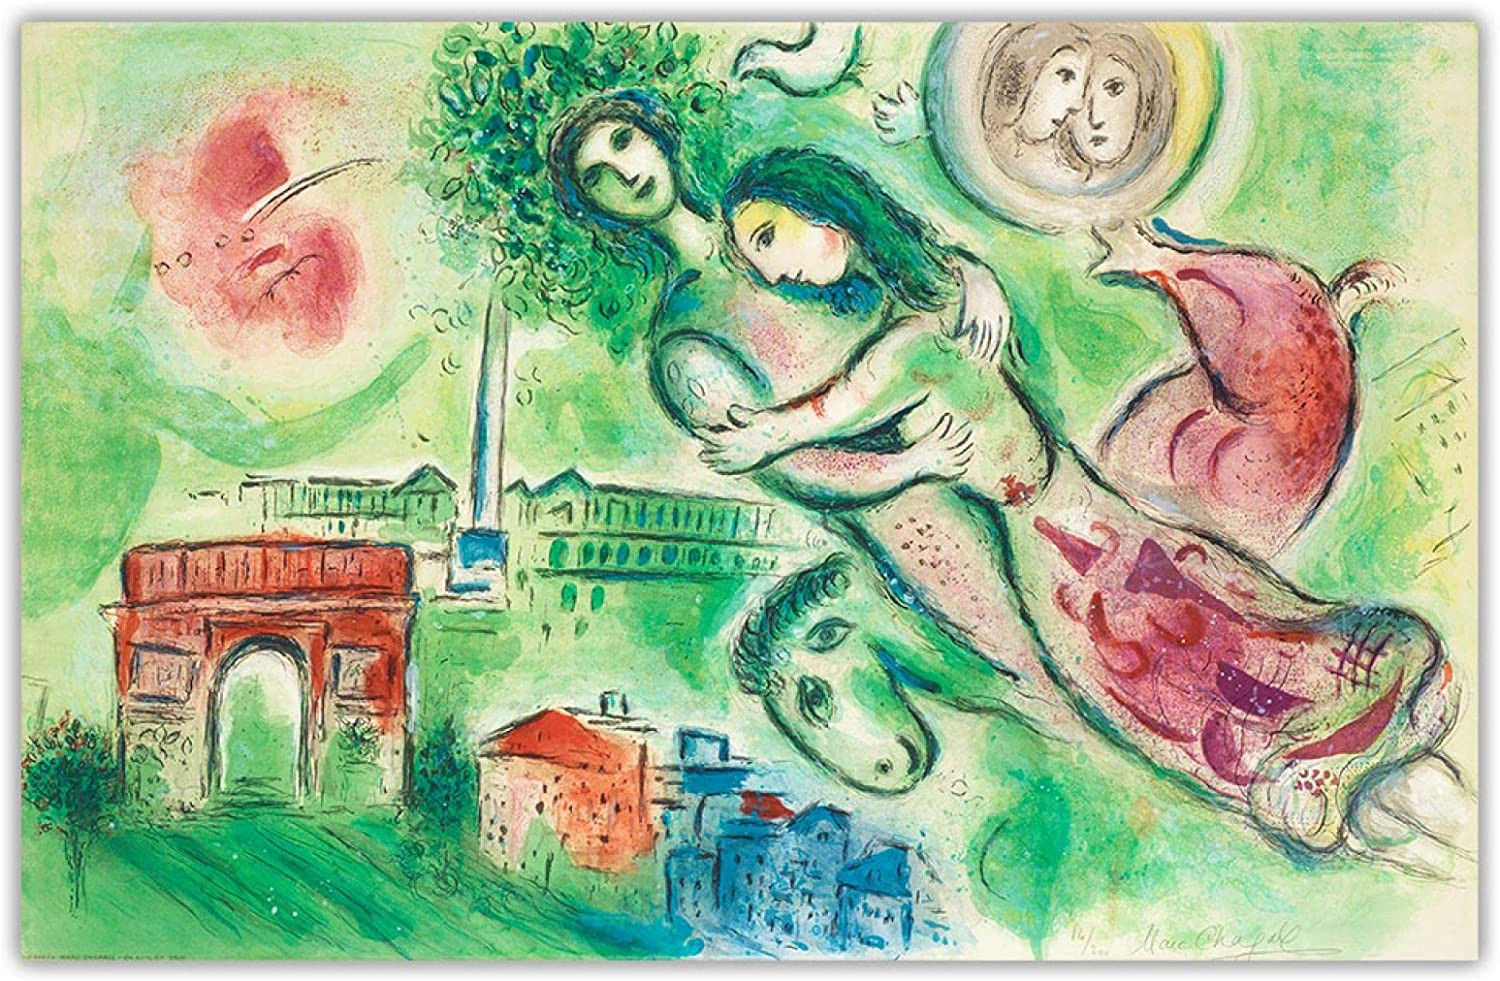 Lithograph by Marc Chagall, La flûte enchantée (The Magic Flute), 1967